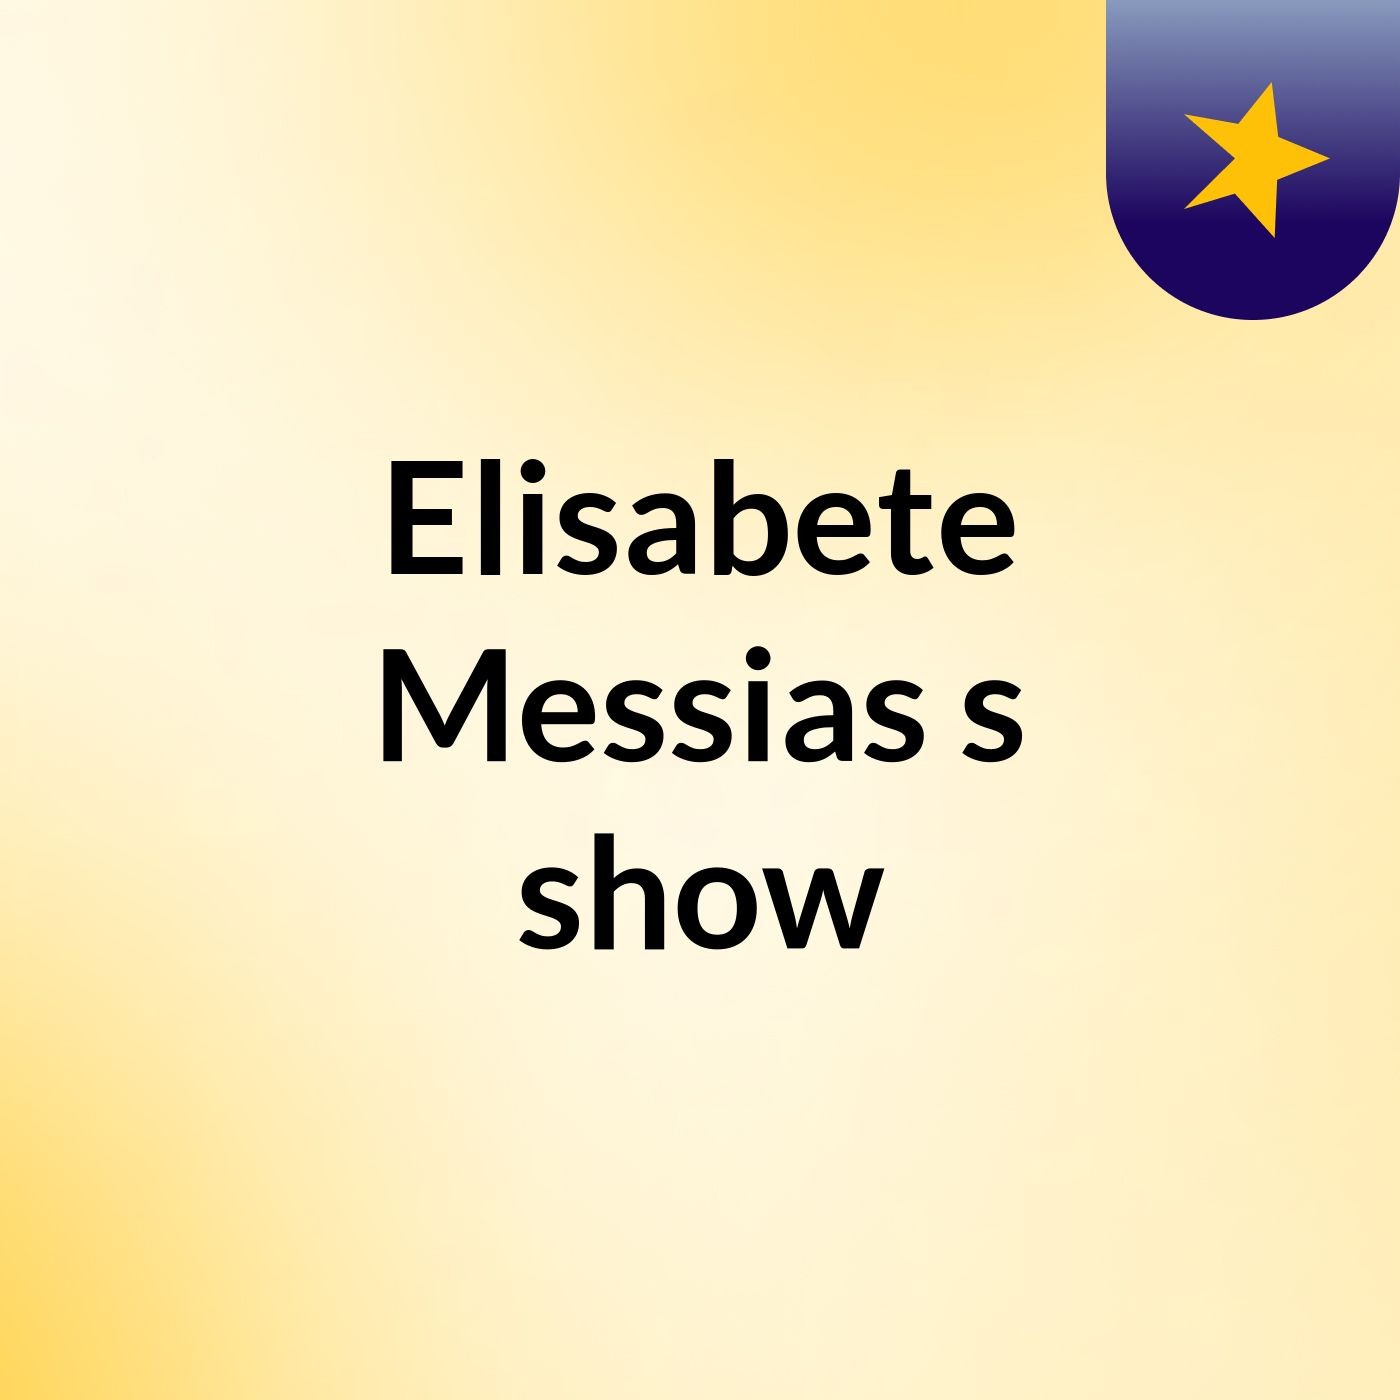 Elisabete Messias's show